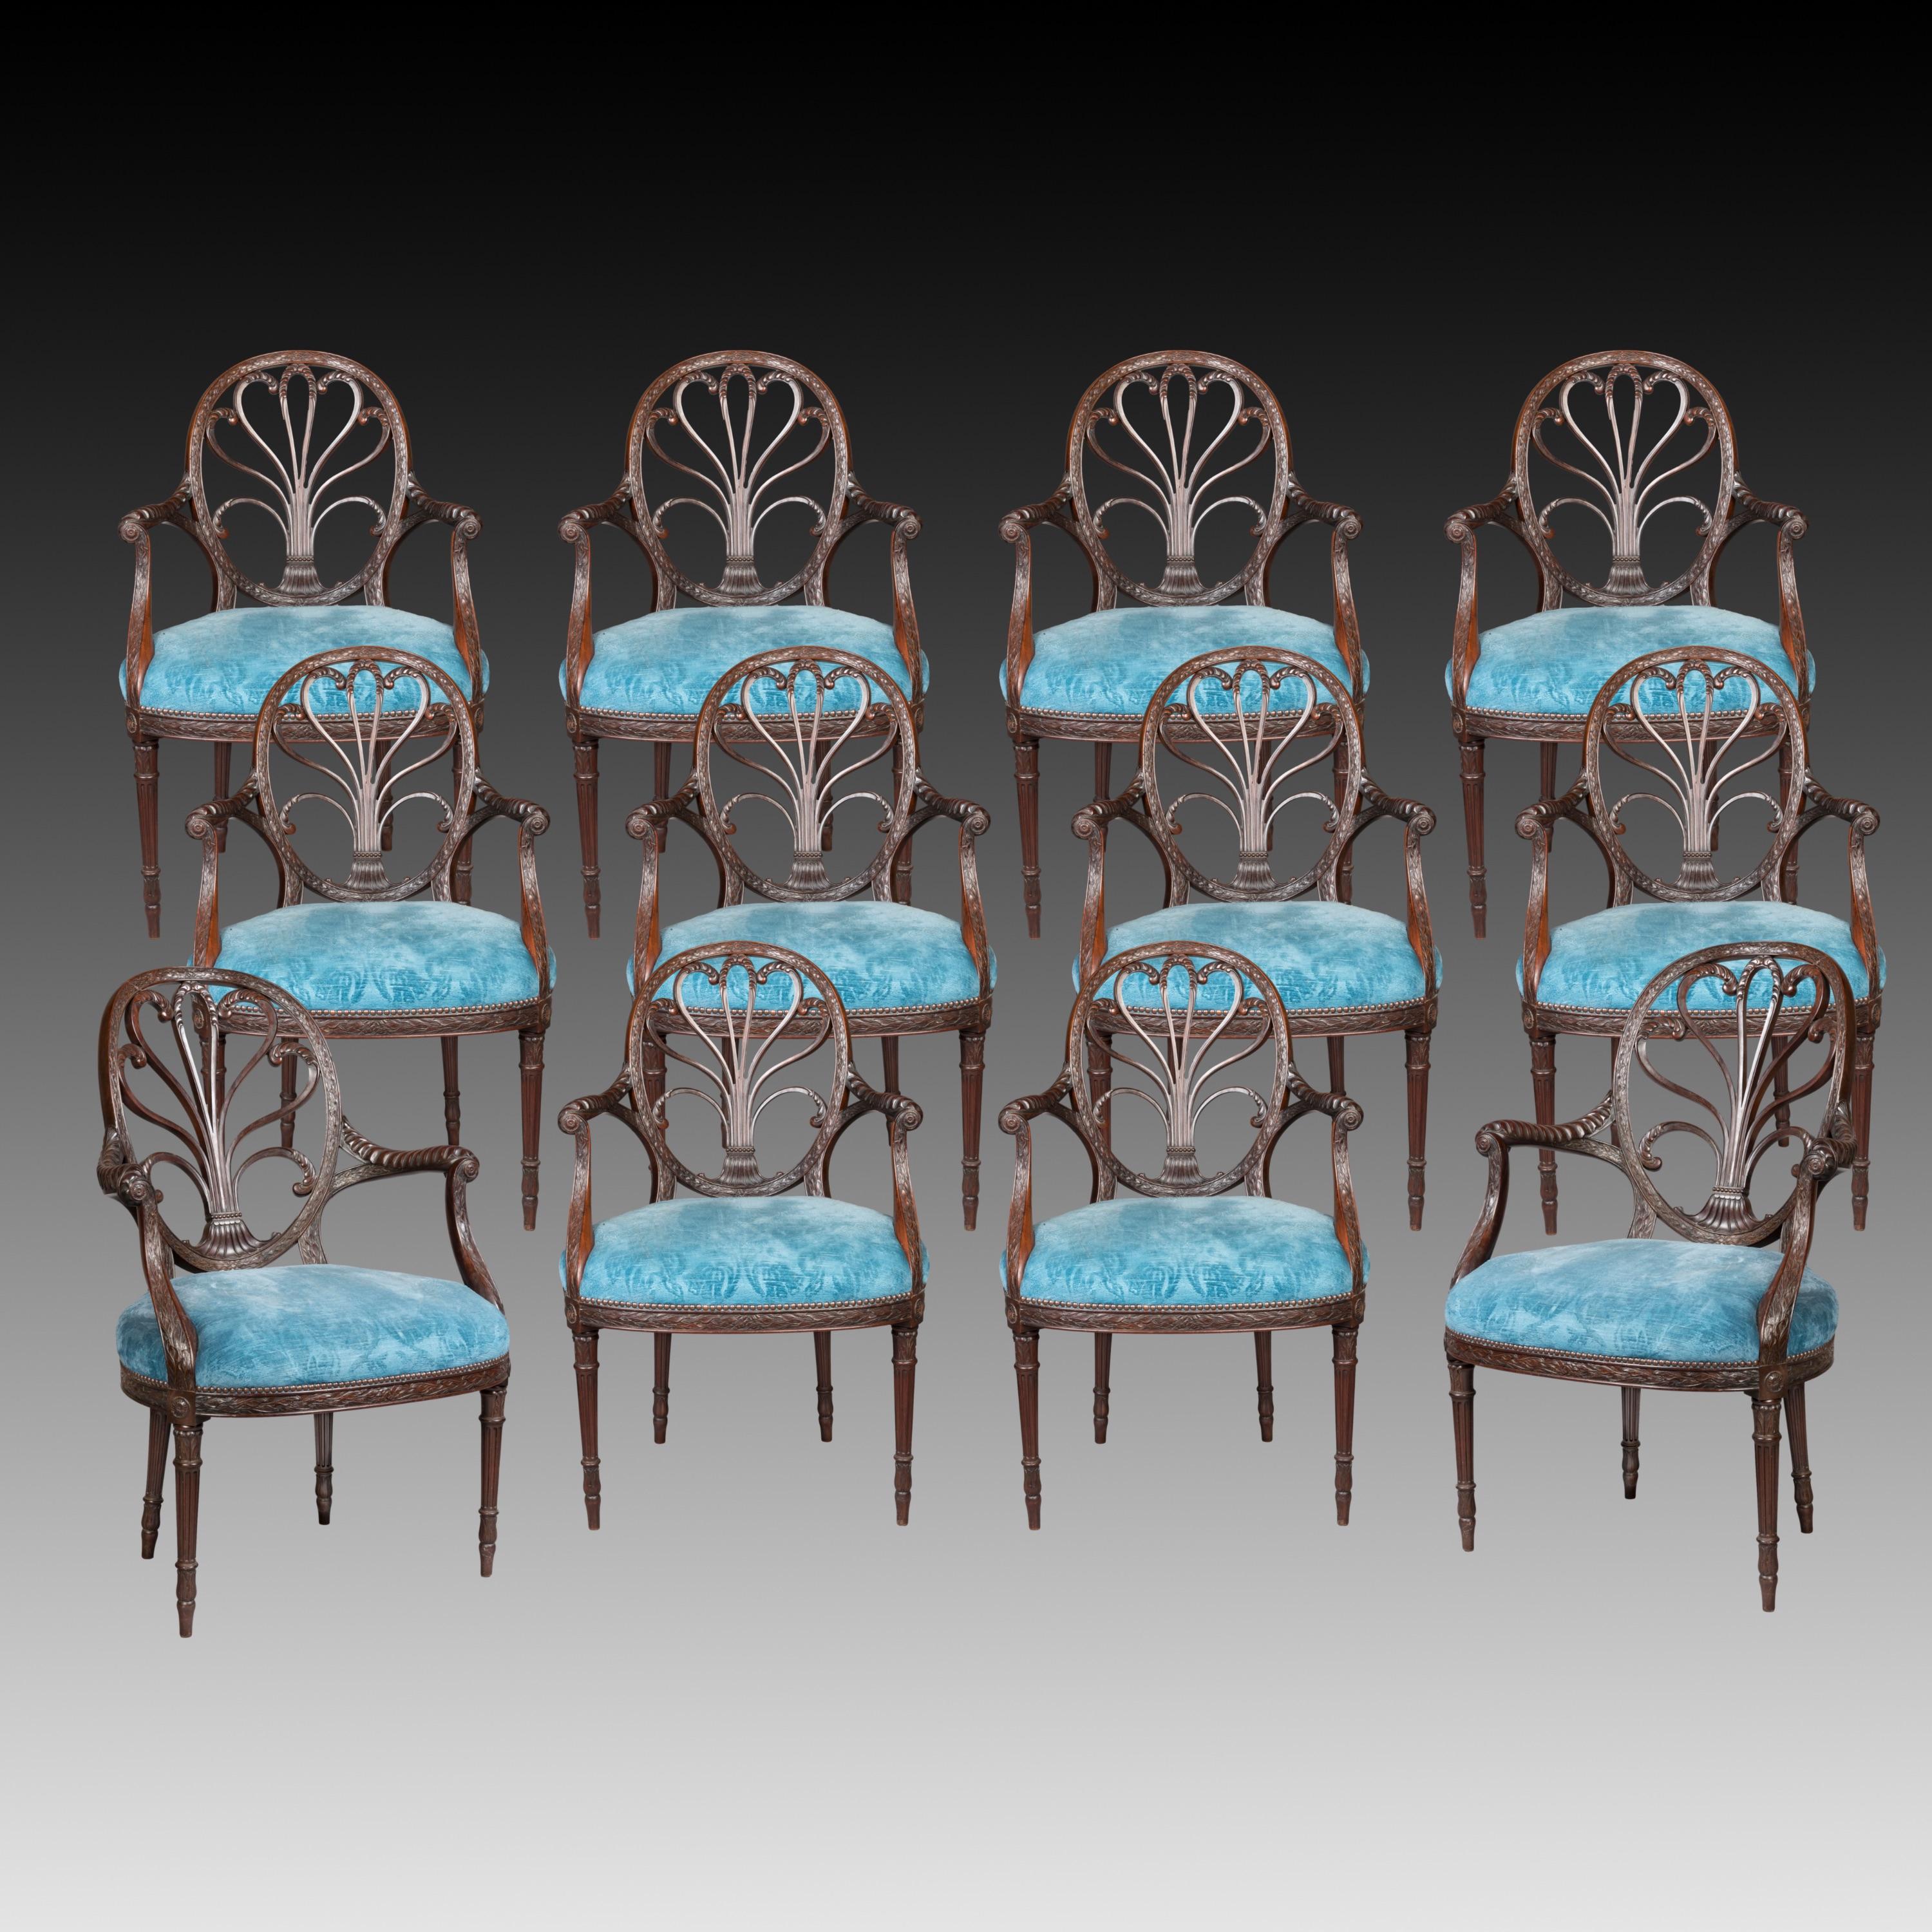 Ein seltener Satz von schön gezeichneten Proportionen mit zwei größeren Sesseln und zehn von kleinerem Ausmaß, alle aus Mahagoni geschnitzt, auf spitz zulaufenden und kannelierten, ringförmig gedrehten Vorderbeinen stehend, mit Bändern von